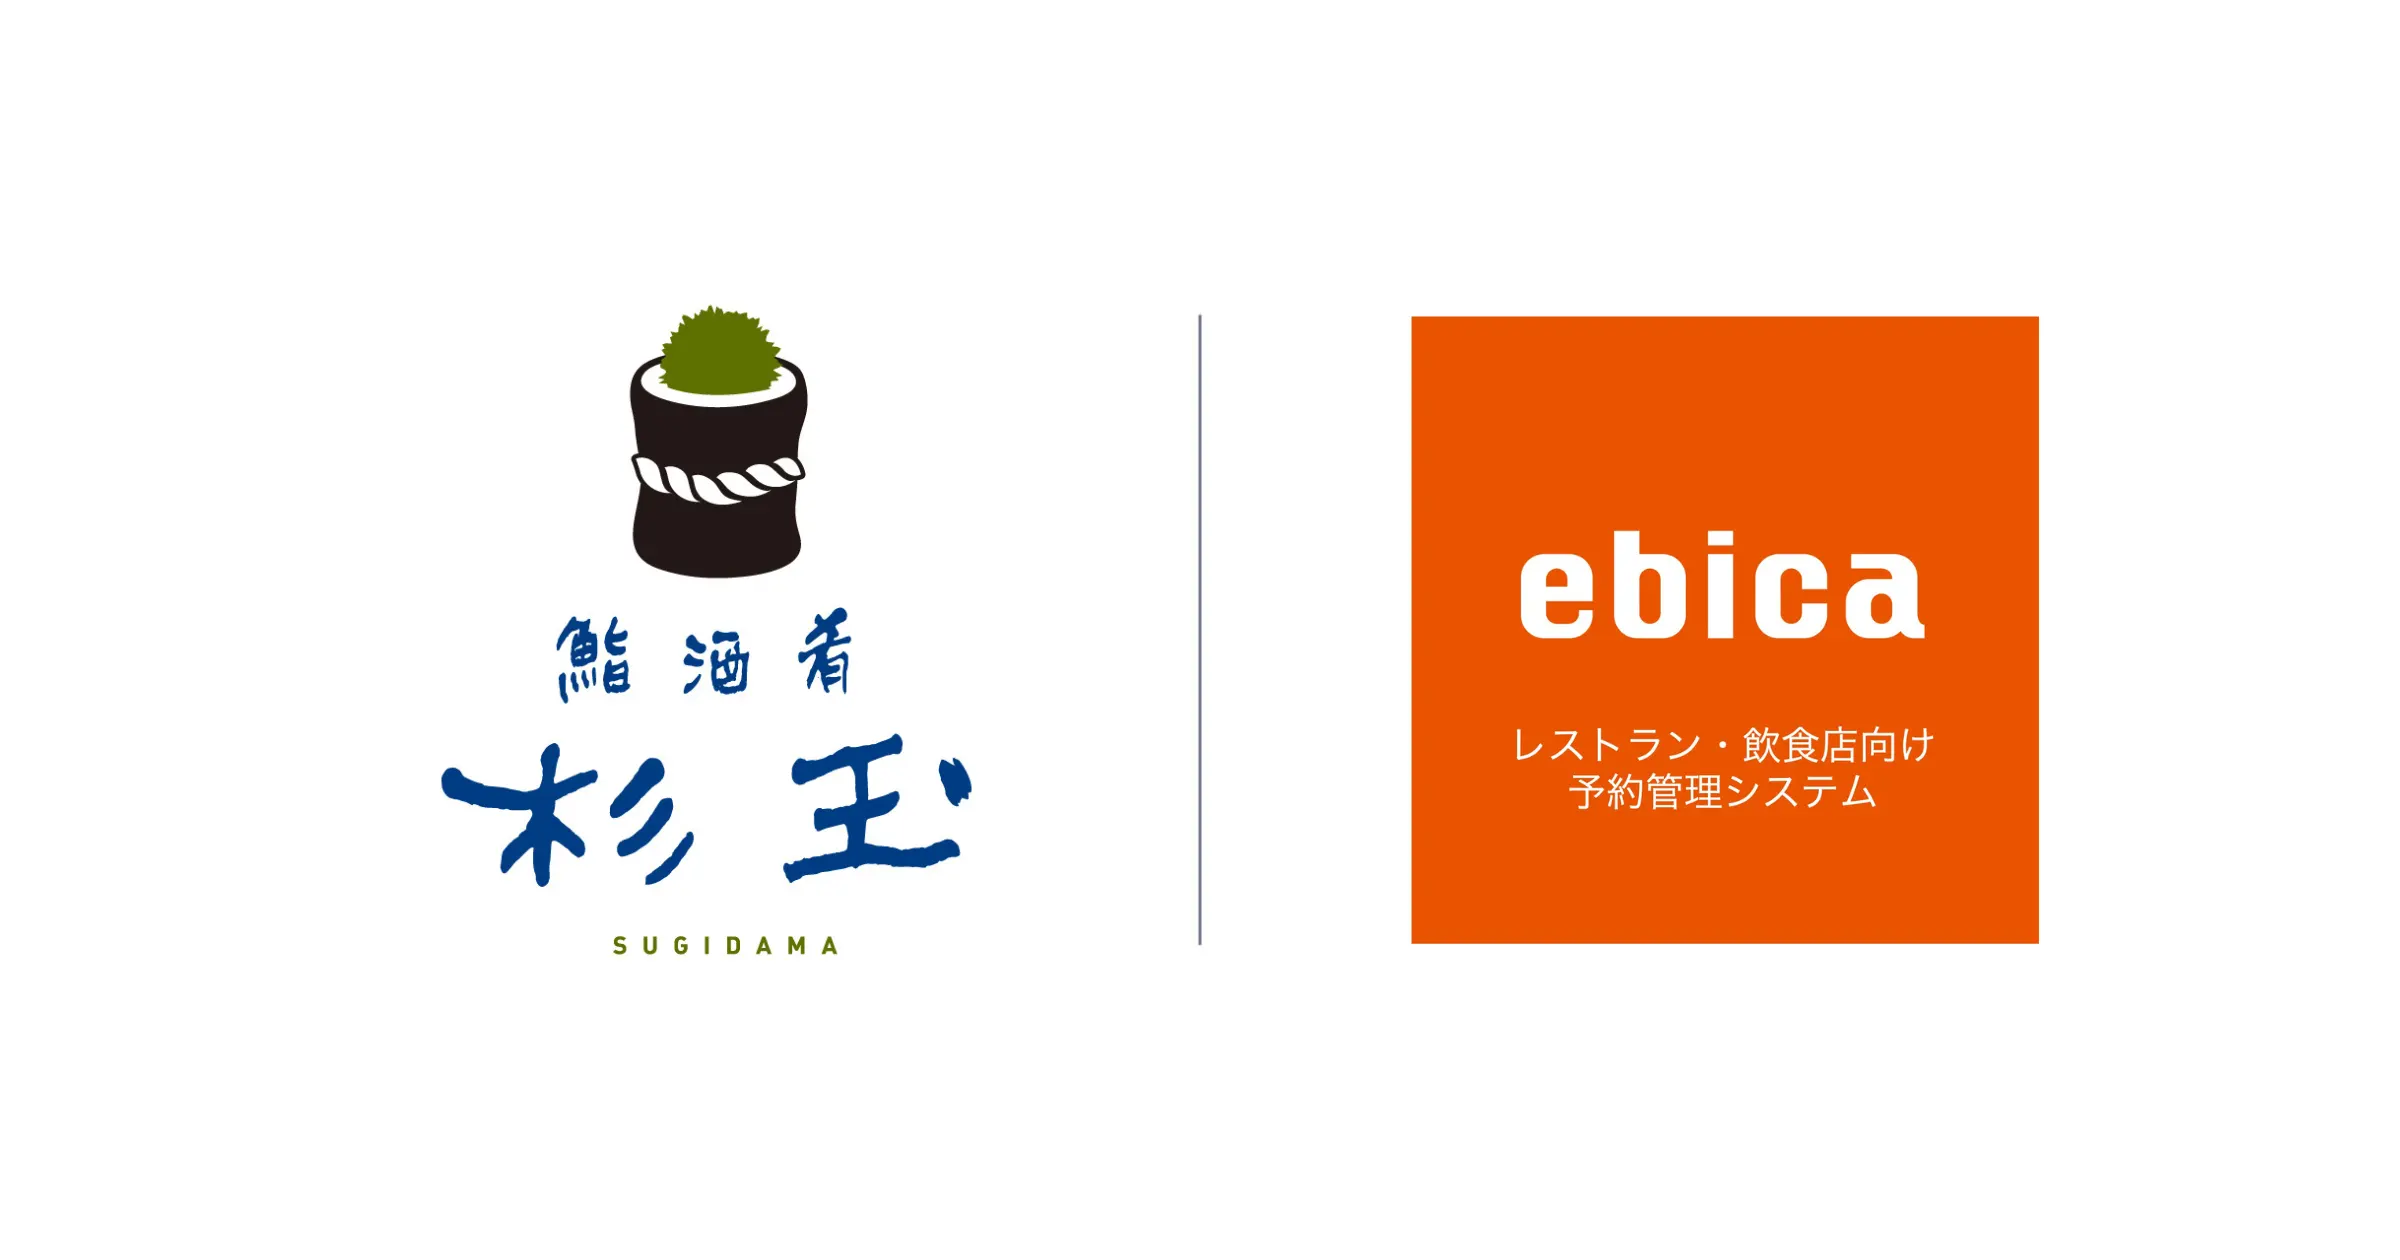 「スシロー」をグループにもつ、大衆寿司居酒屋「鮨 酒 肴　杉玉」
全国の直営全62店舗に「ebica」を導入